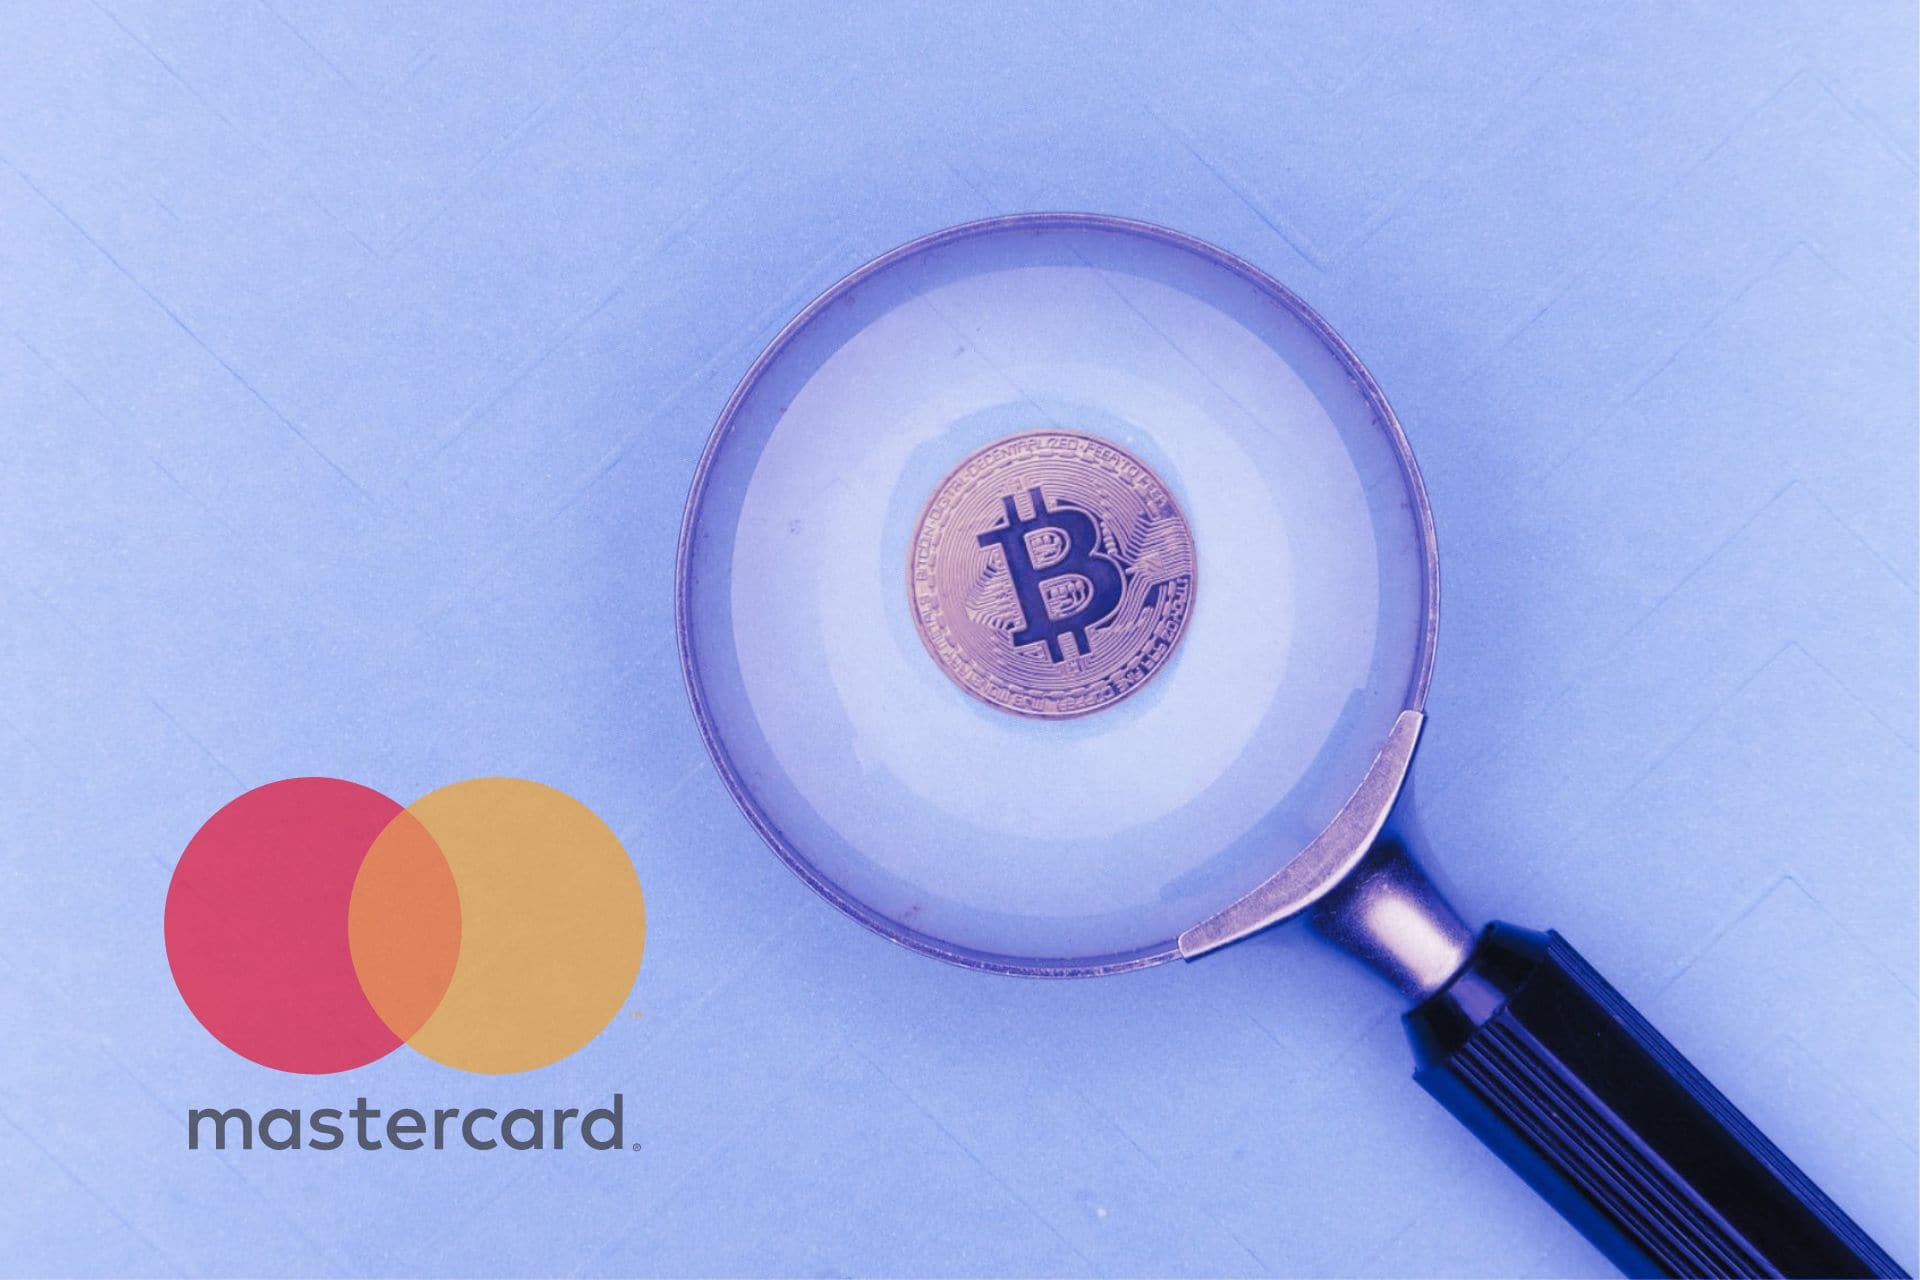 bitcoin mastercard unsplash canva